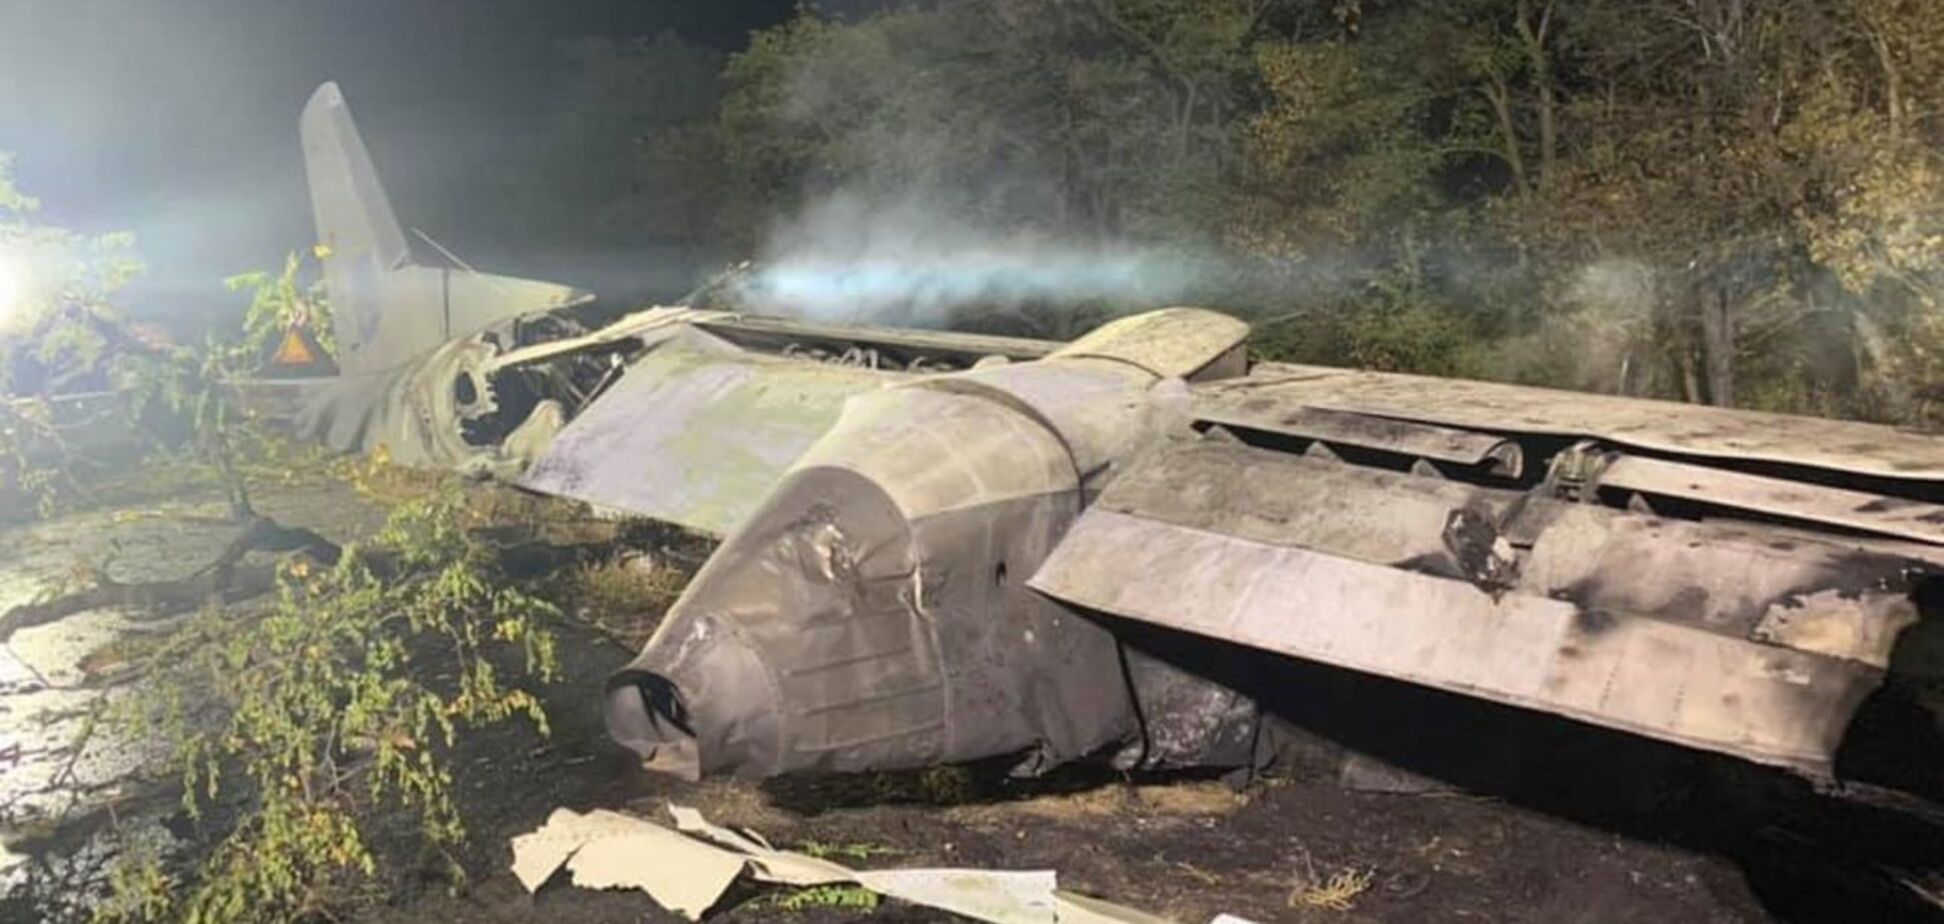 Поблизу м. Чугуїв сталося падіння літака АН-26. Фото: Facebook Олексія Кучера